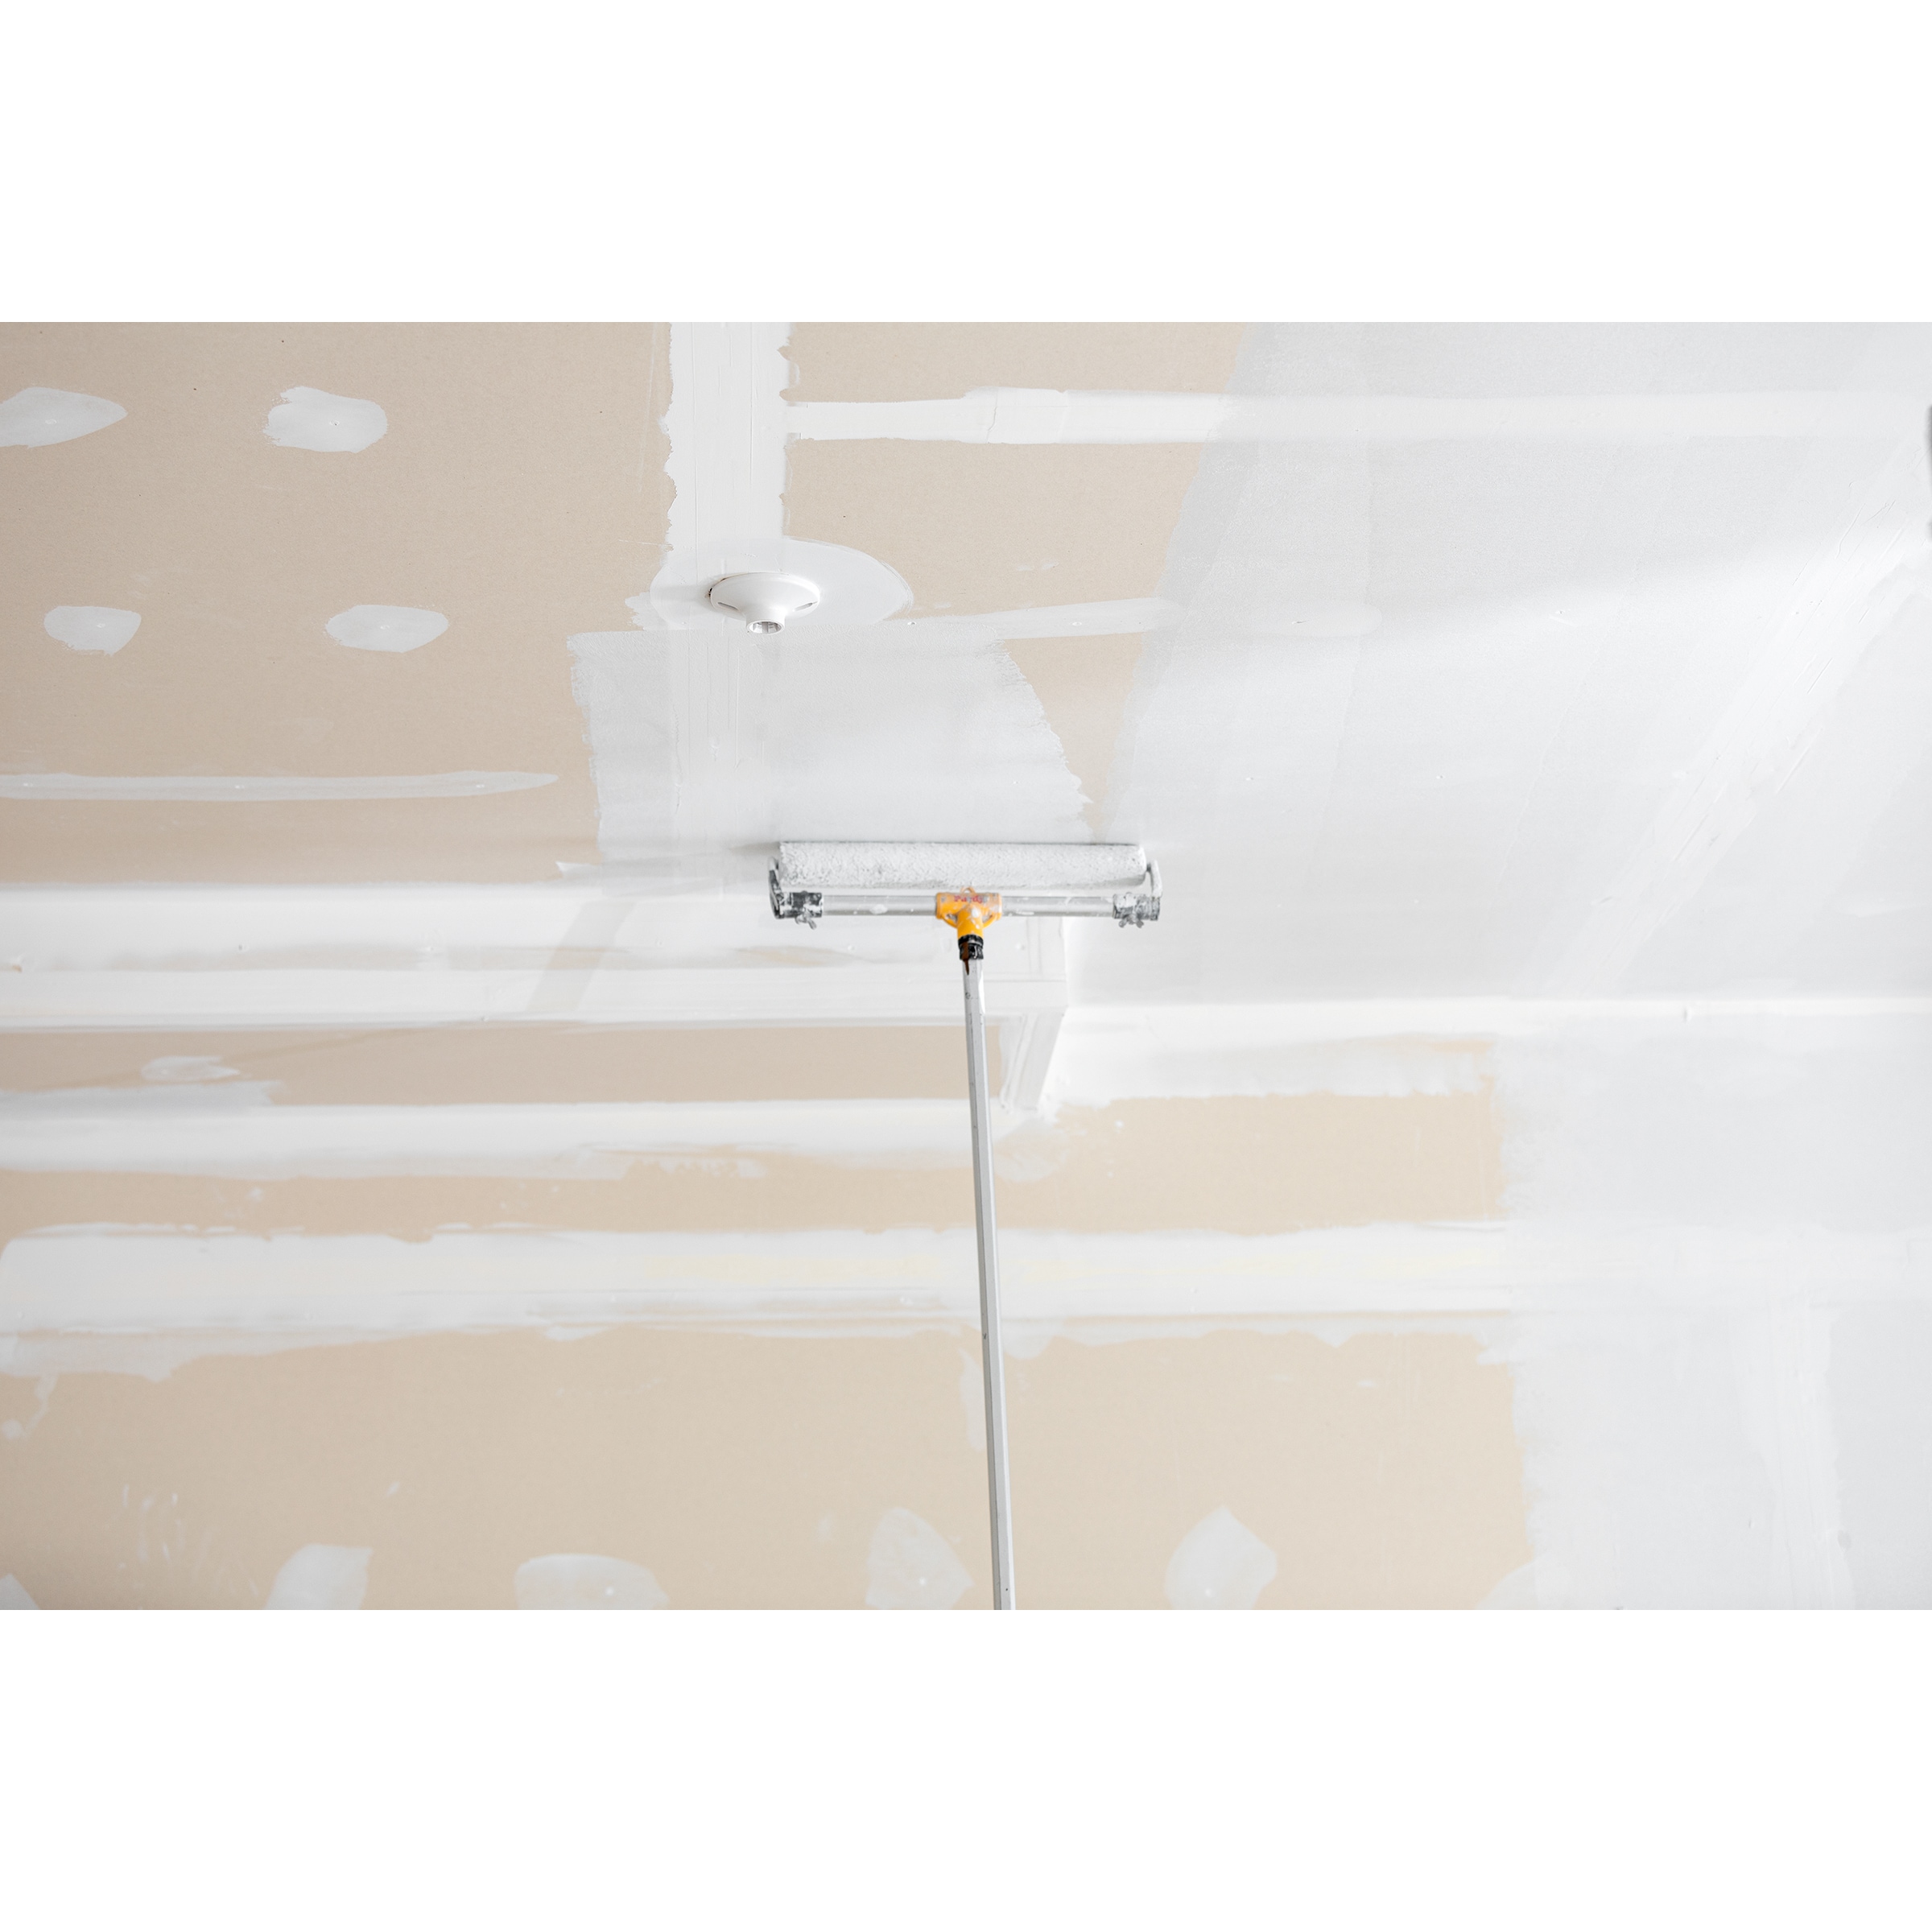  Pintura interior plana ultra pura blanca cero COV de 5 galones  : Herramientas y Mejoras del Hogar